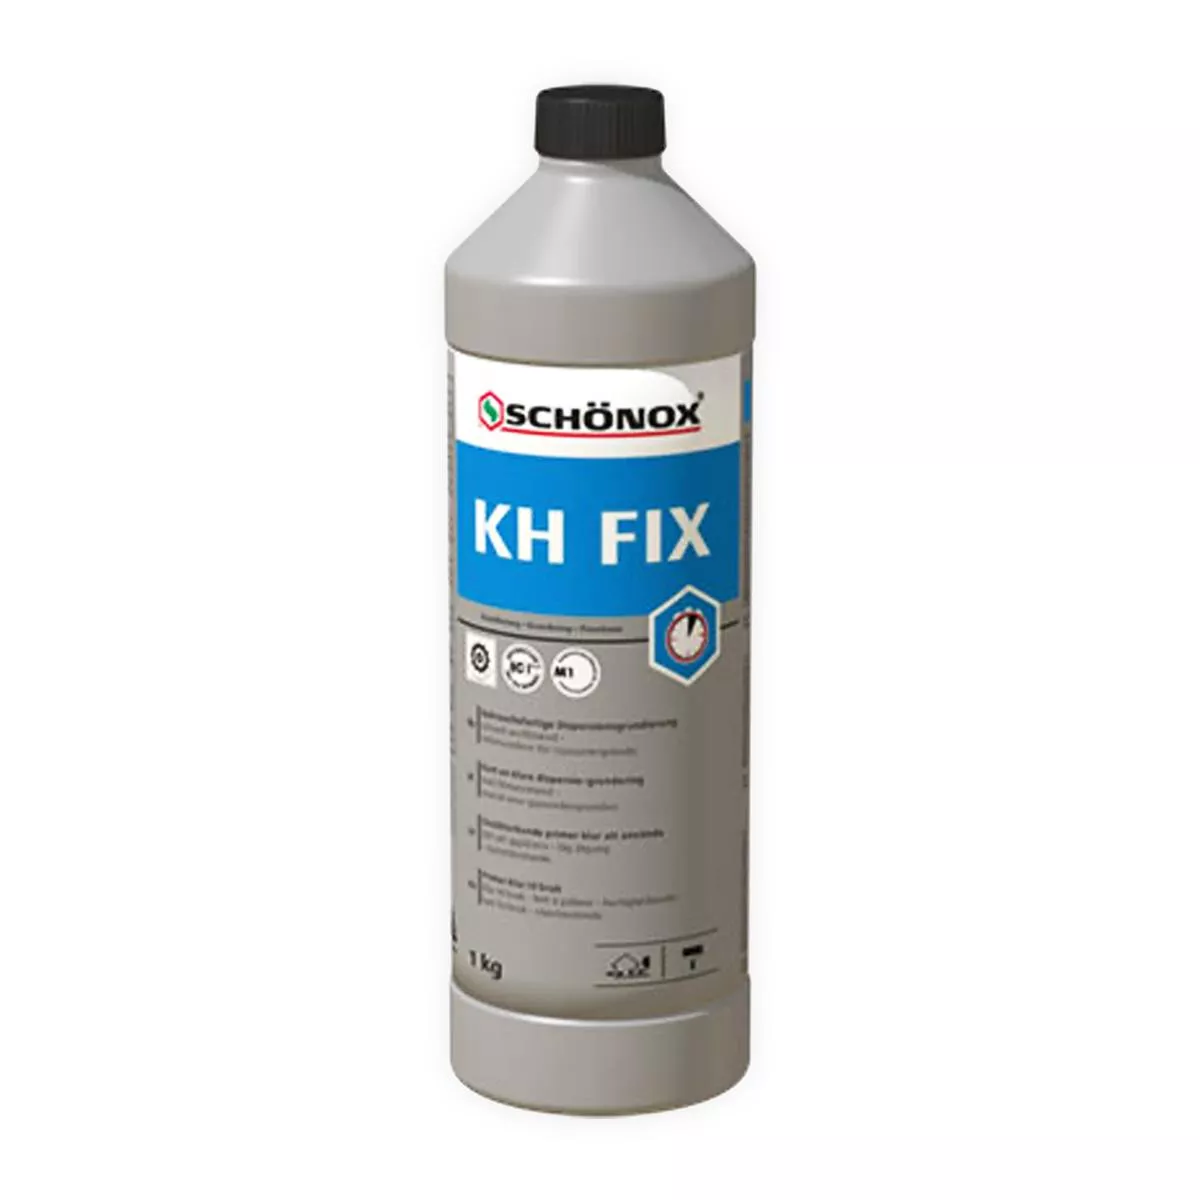 Grundierung Gebrauchsfertig Schönox KH FIX Kunstharzhaftdispersion 1 kg